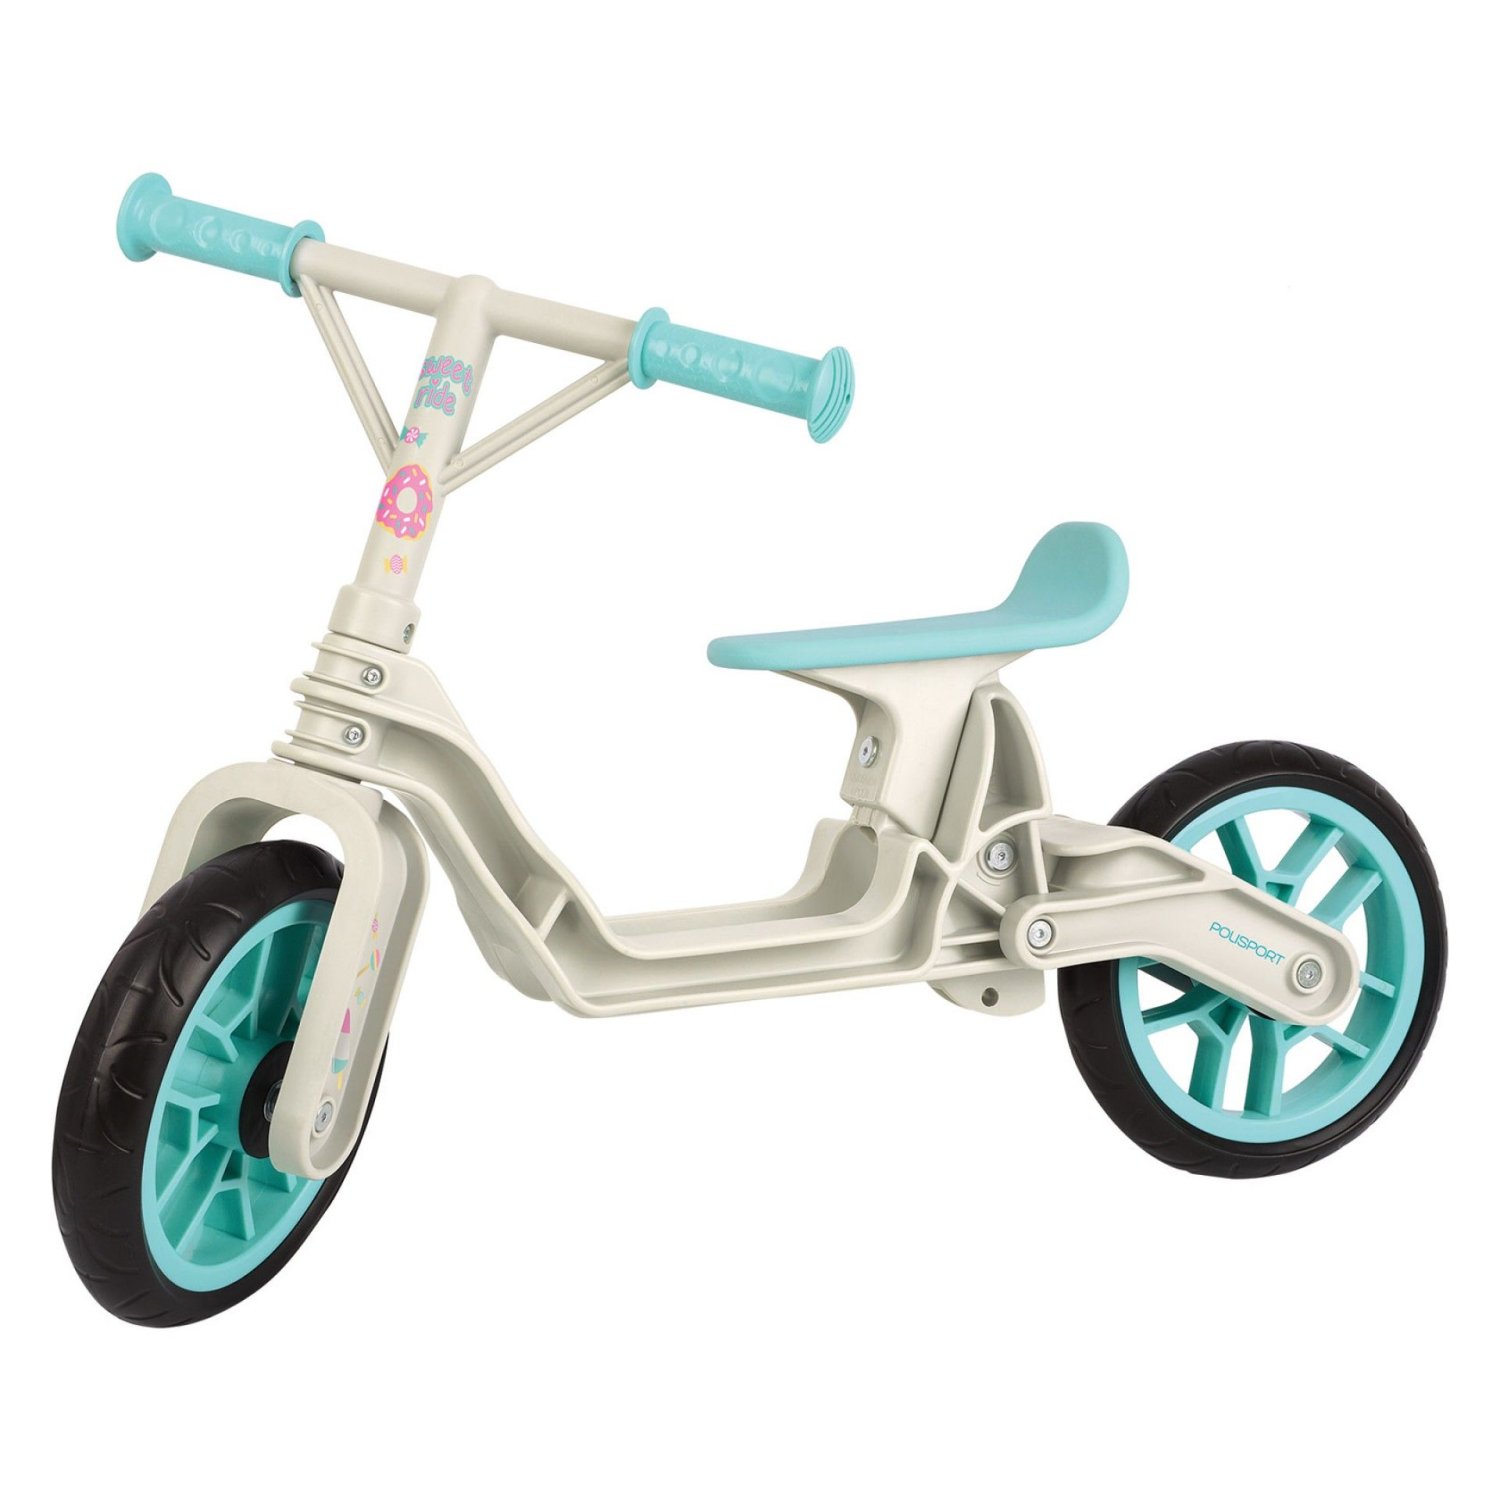 Детский беговел Polisport Balance bike, cream/mint, 2021 детский беговел polisport balance bike cream mint 2021